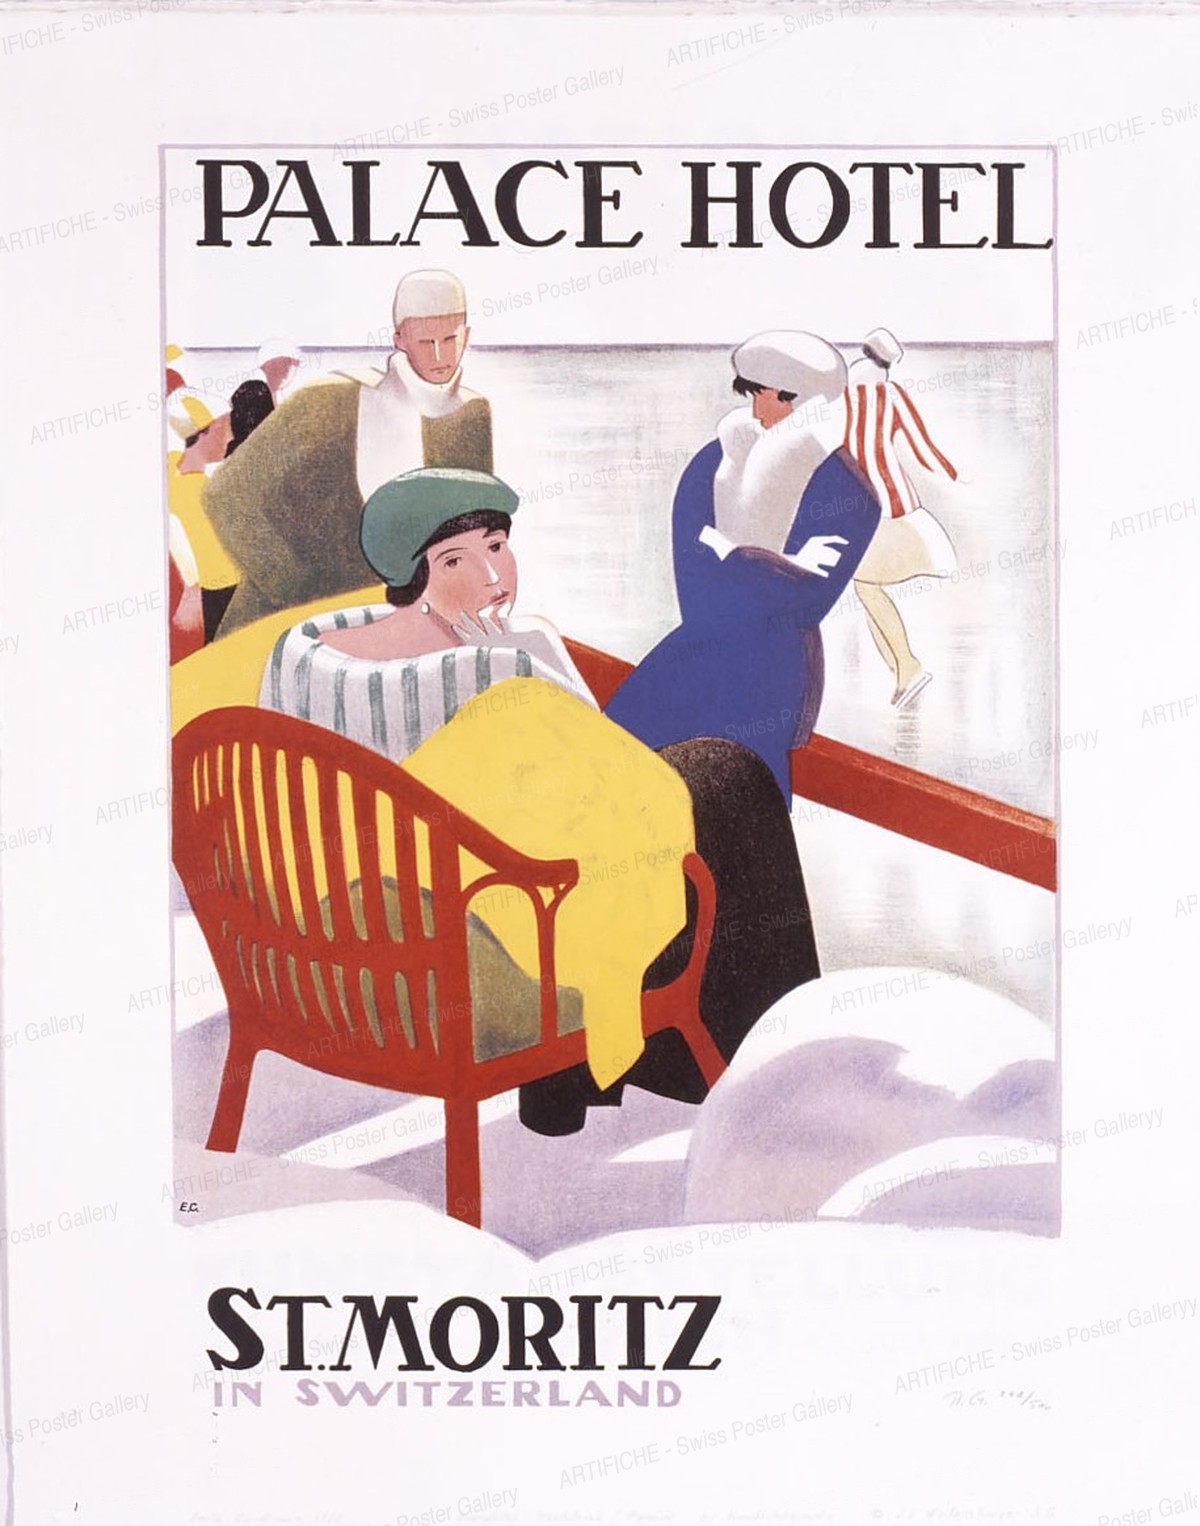 PALACE HOTEL – ST. MORITZ SWITZERLAND, Cardinaux, Emil, d‘après